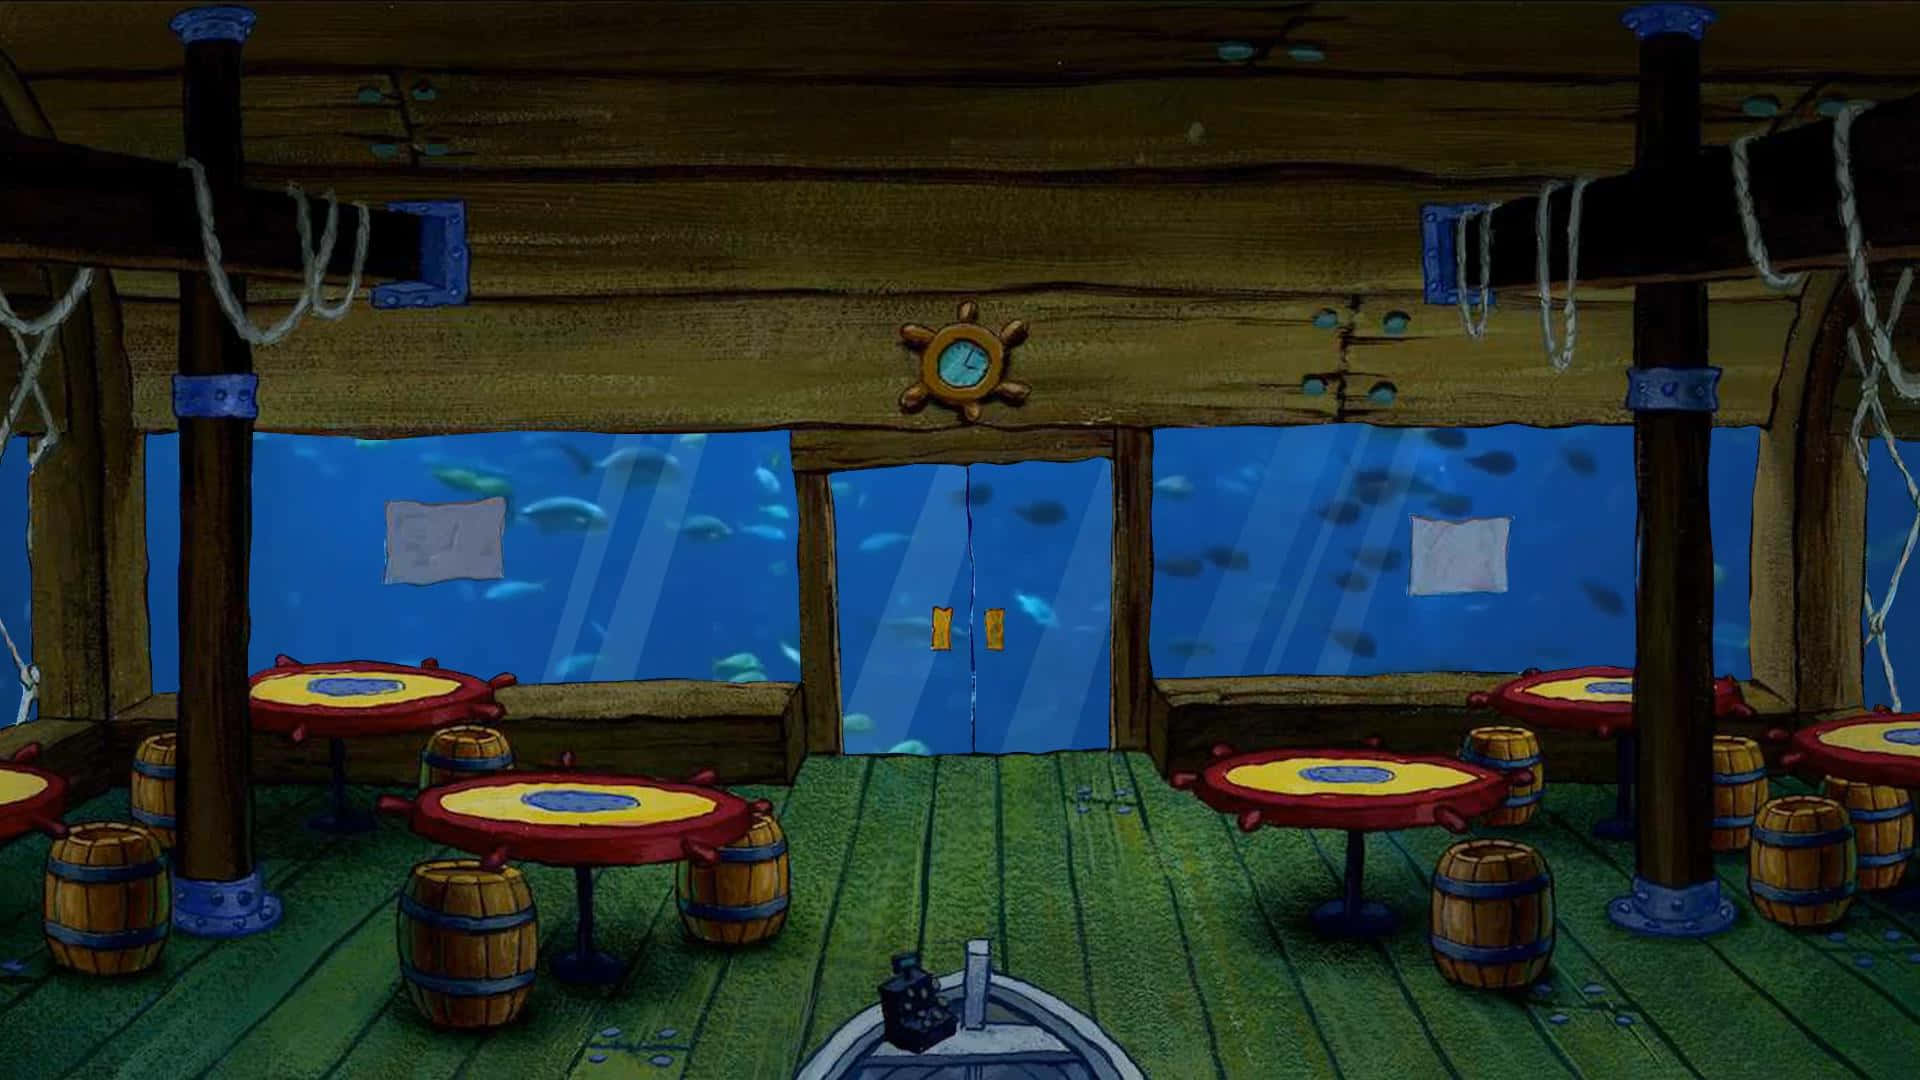 Spongebob Zoom Background Wallpaper